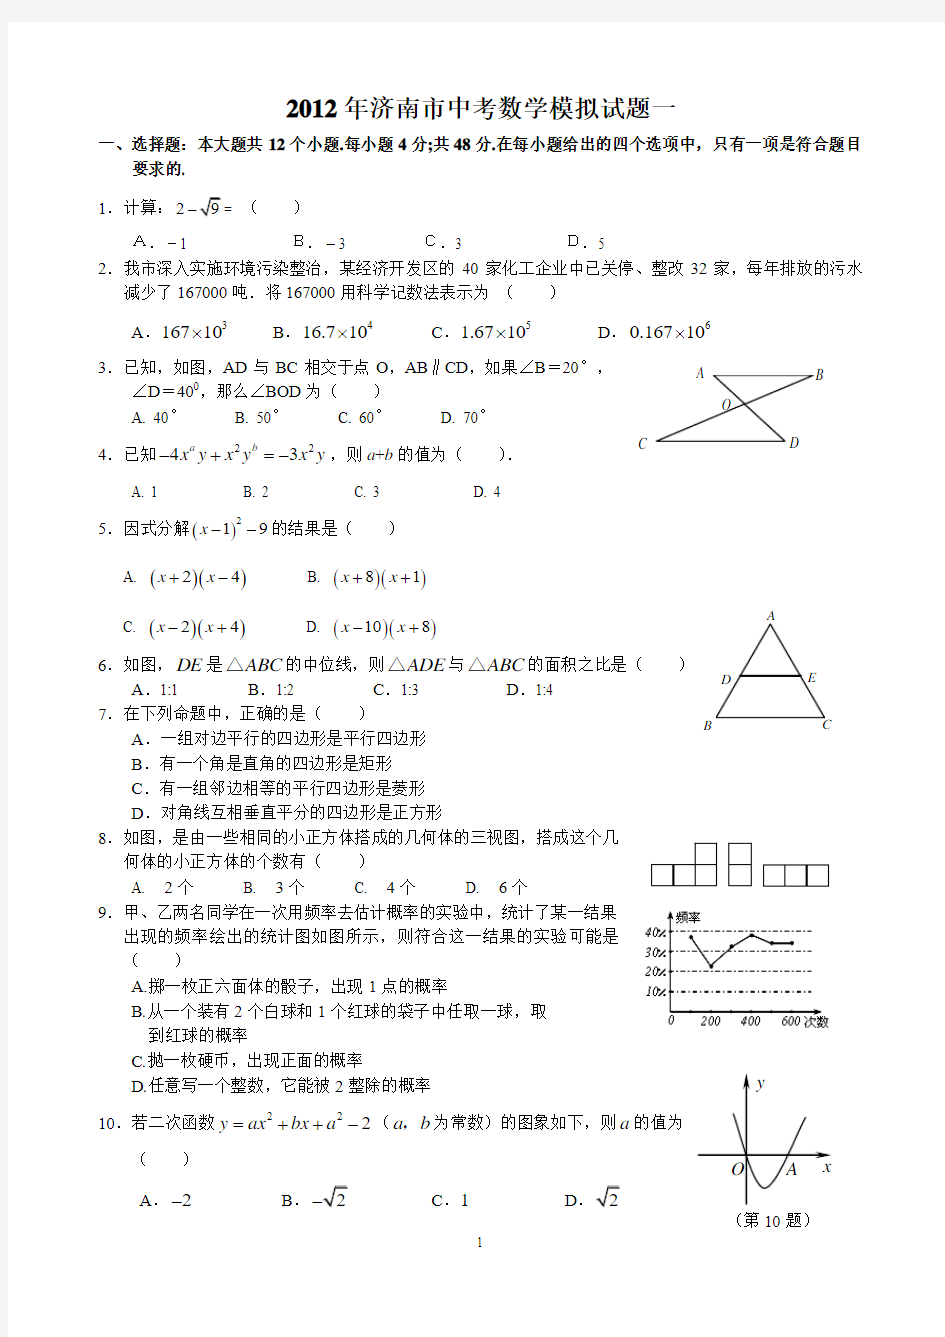 2012年济南市中考数学模拟试题1-5及其答案